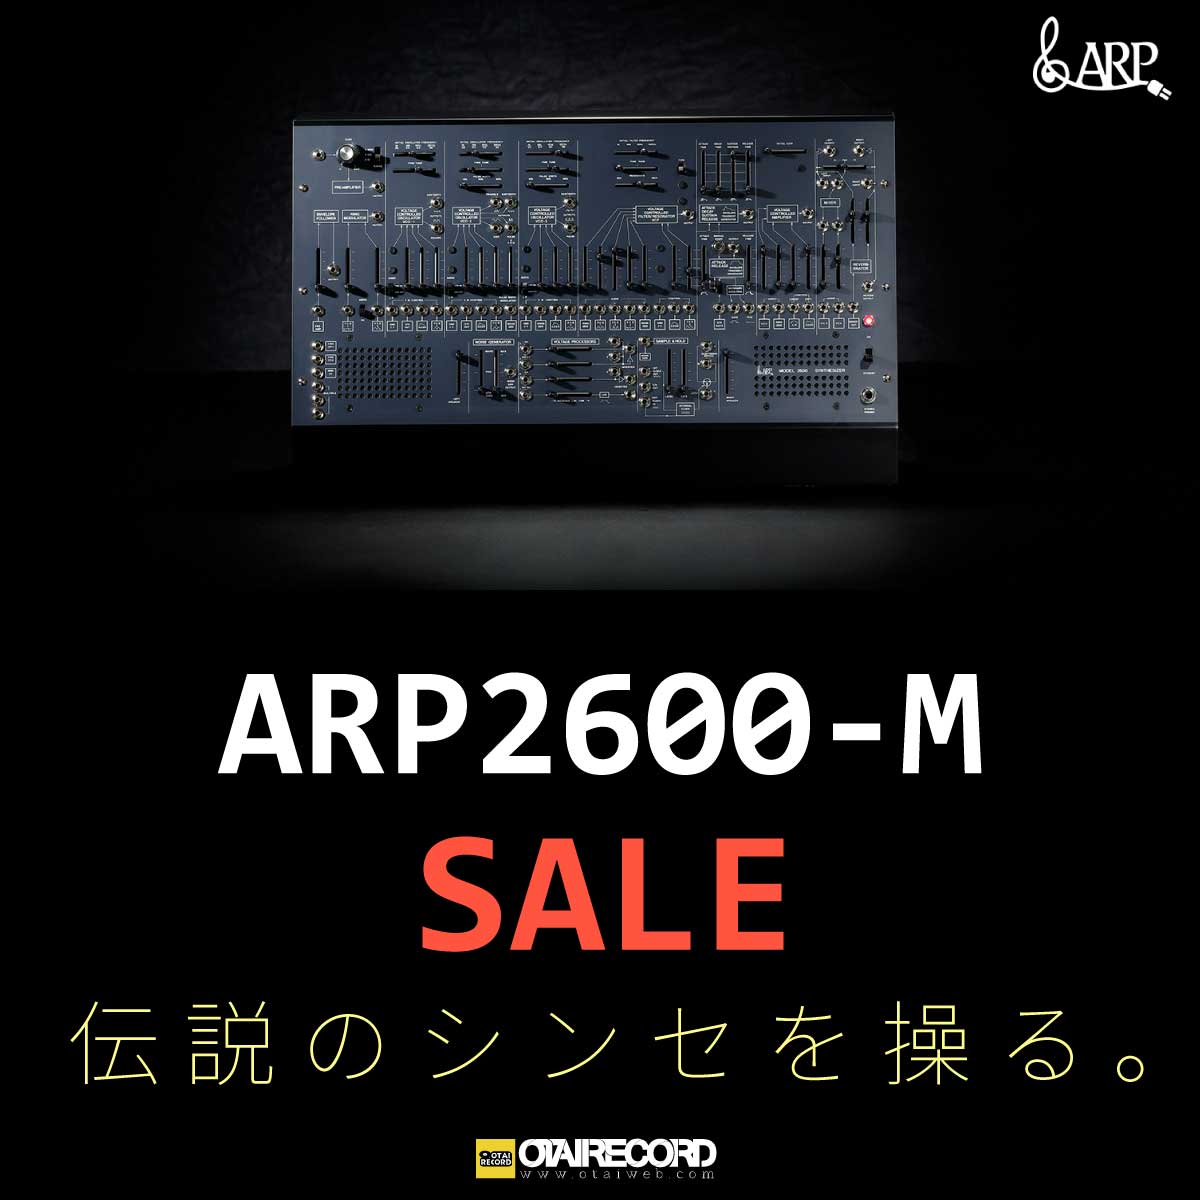 ARP2600-M